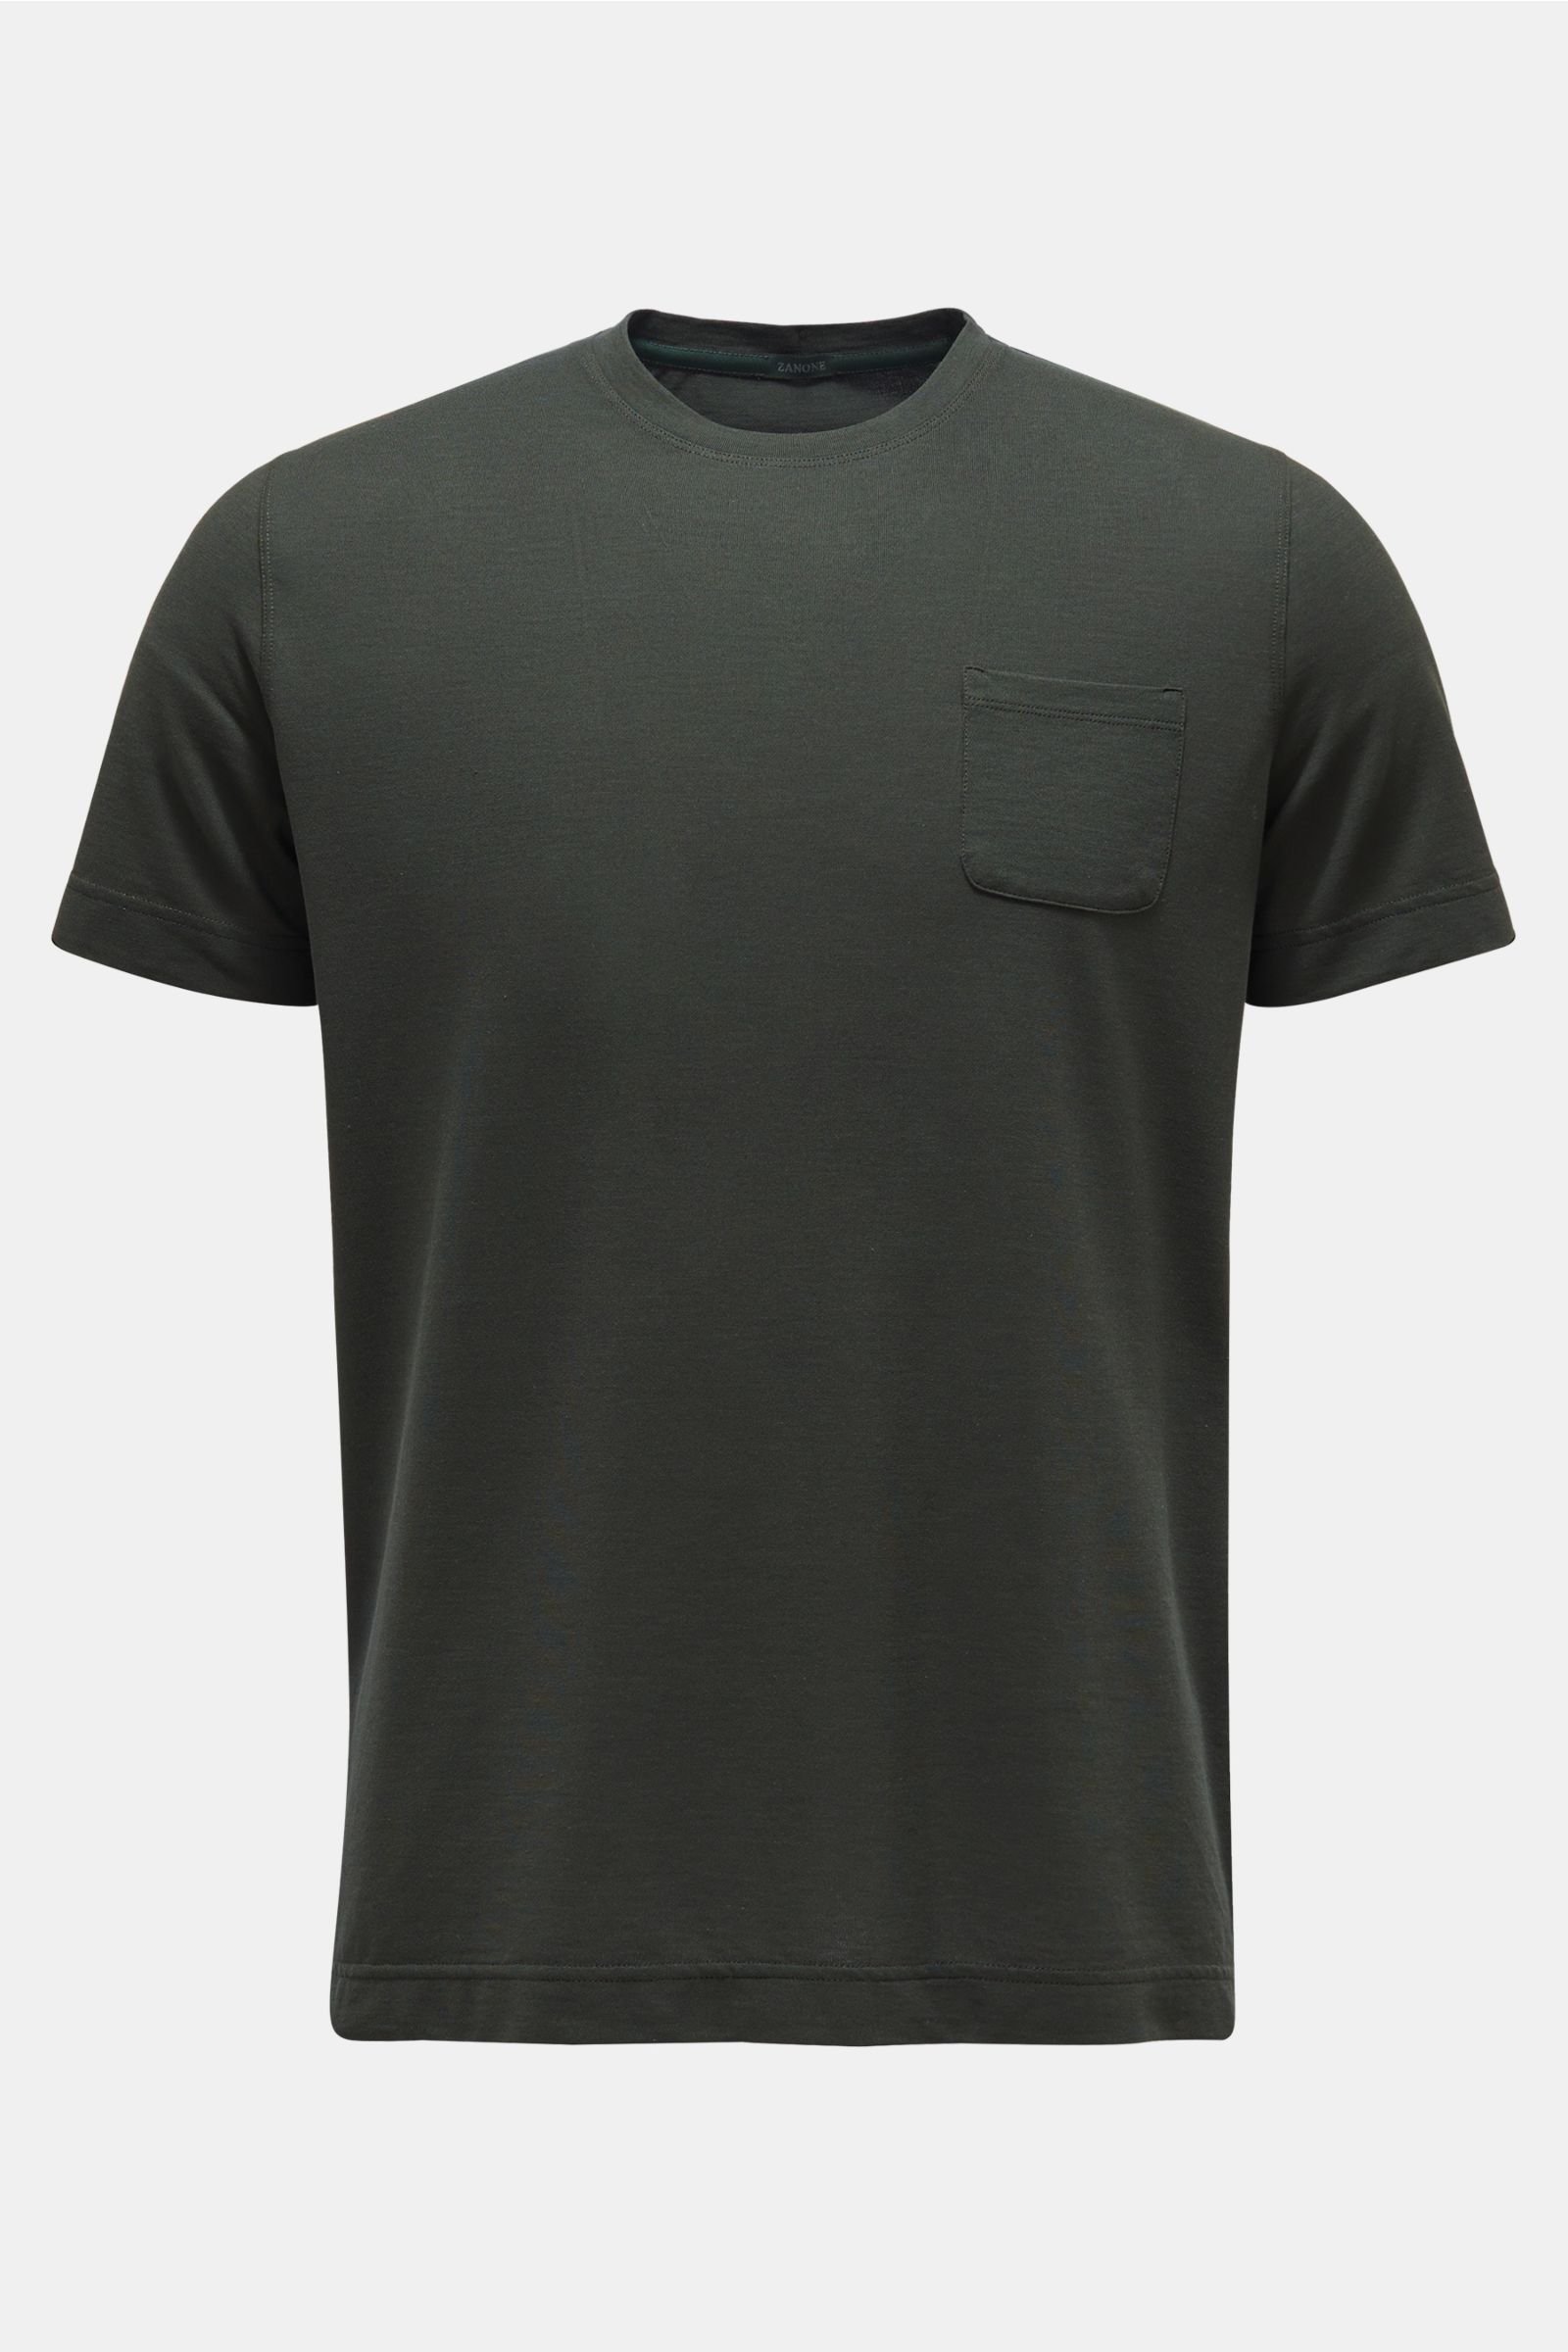 Crew neck T-shirt dark olive